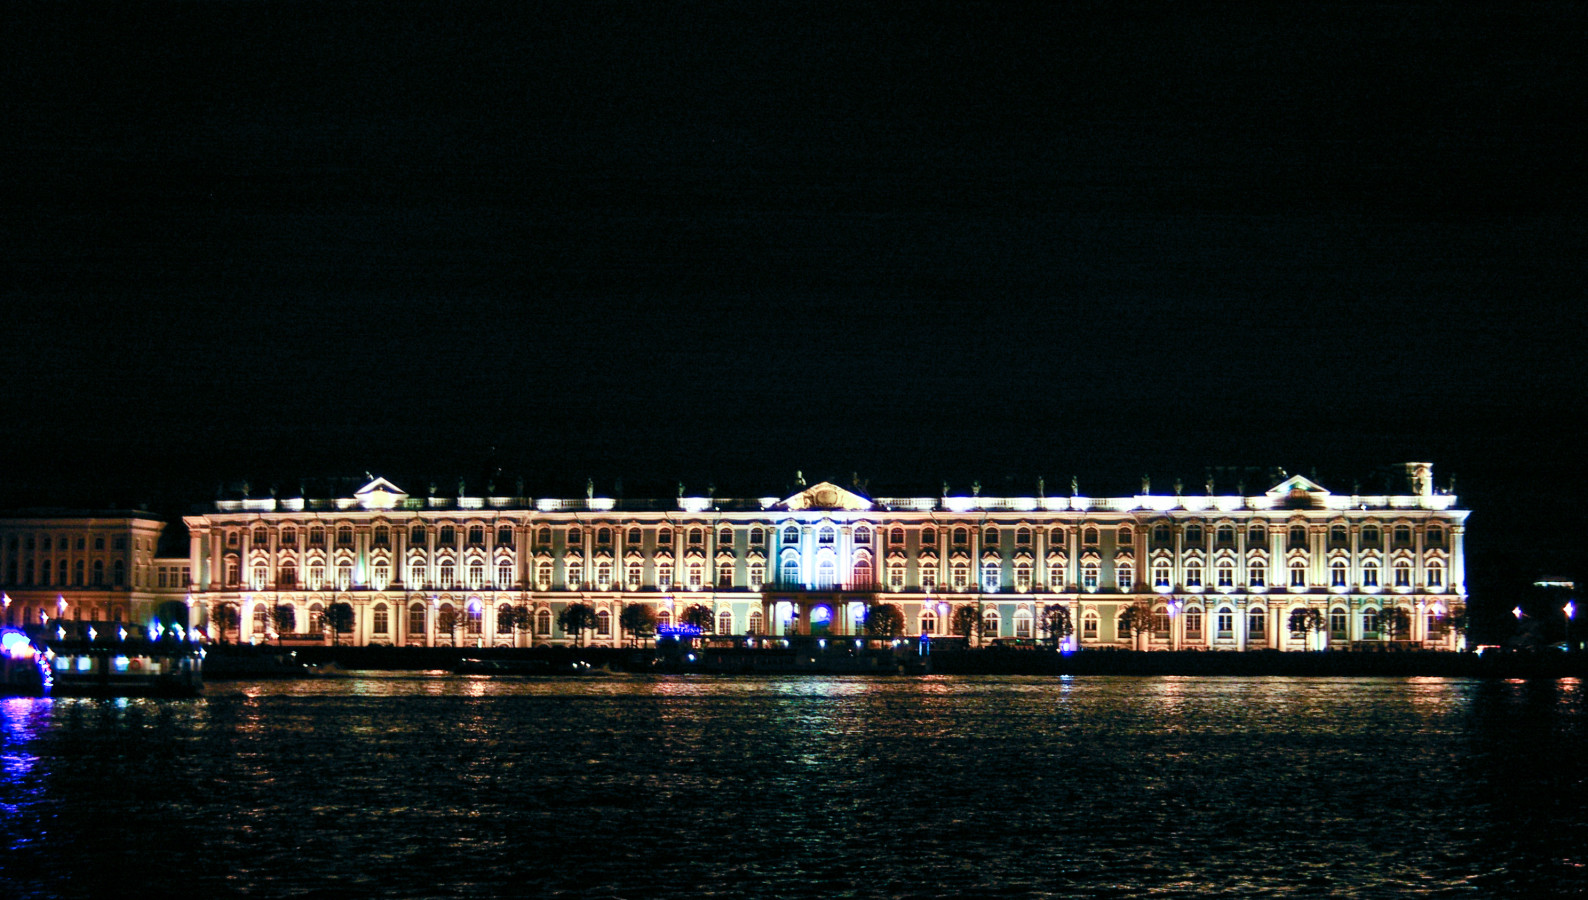 Petersburg, Дворцовая набережная, 38